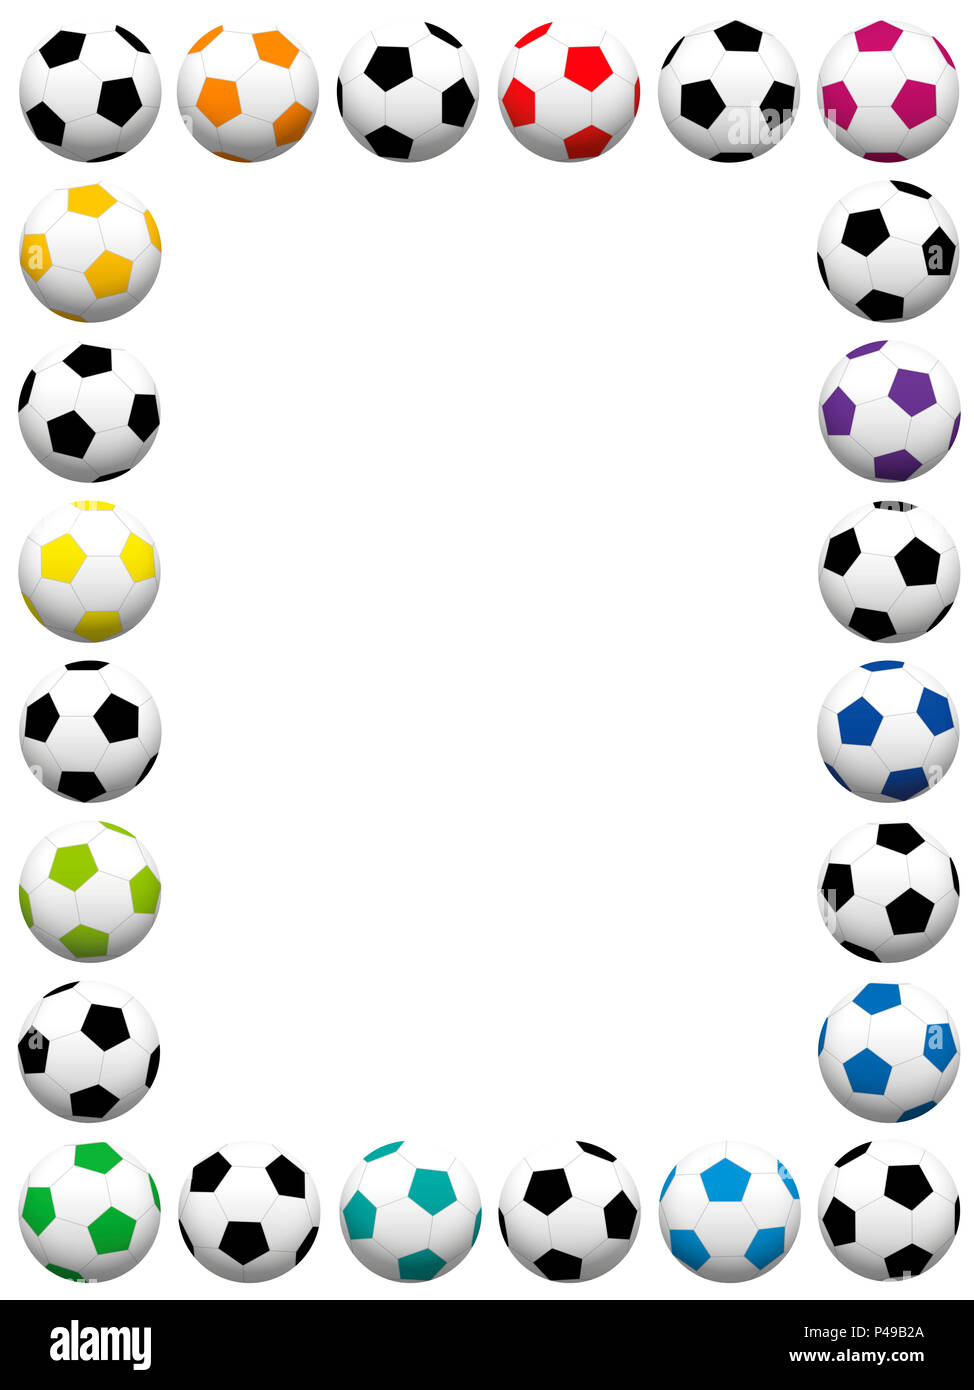 Fußball-Kugeln. Bunte vertikale Rahmen - Abbildung auf weißen Hintergrund. Stockfoto